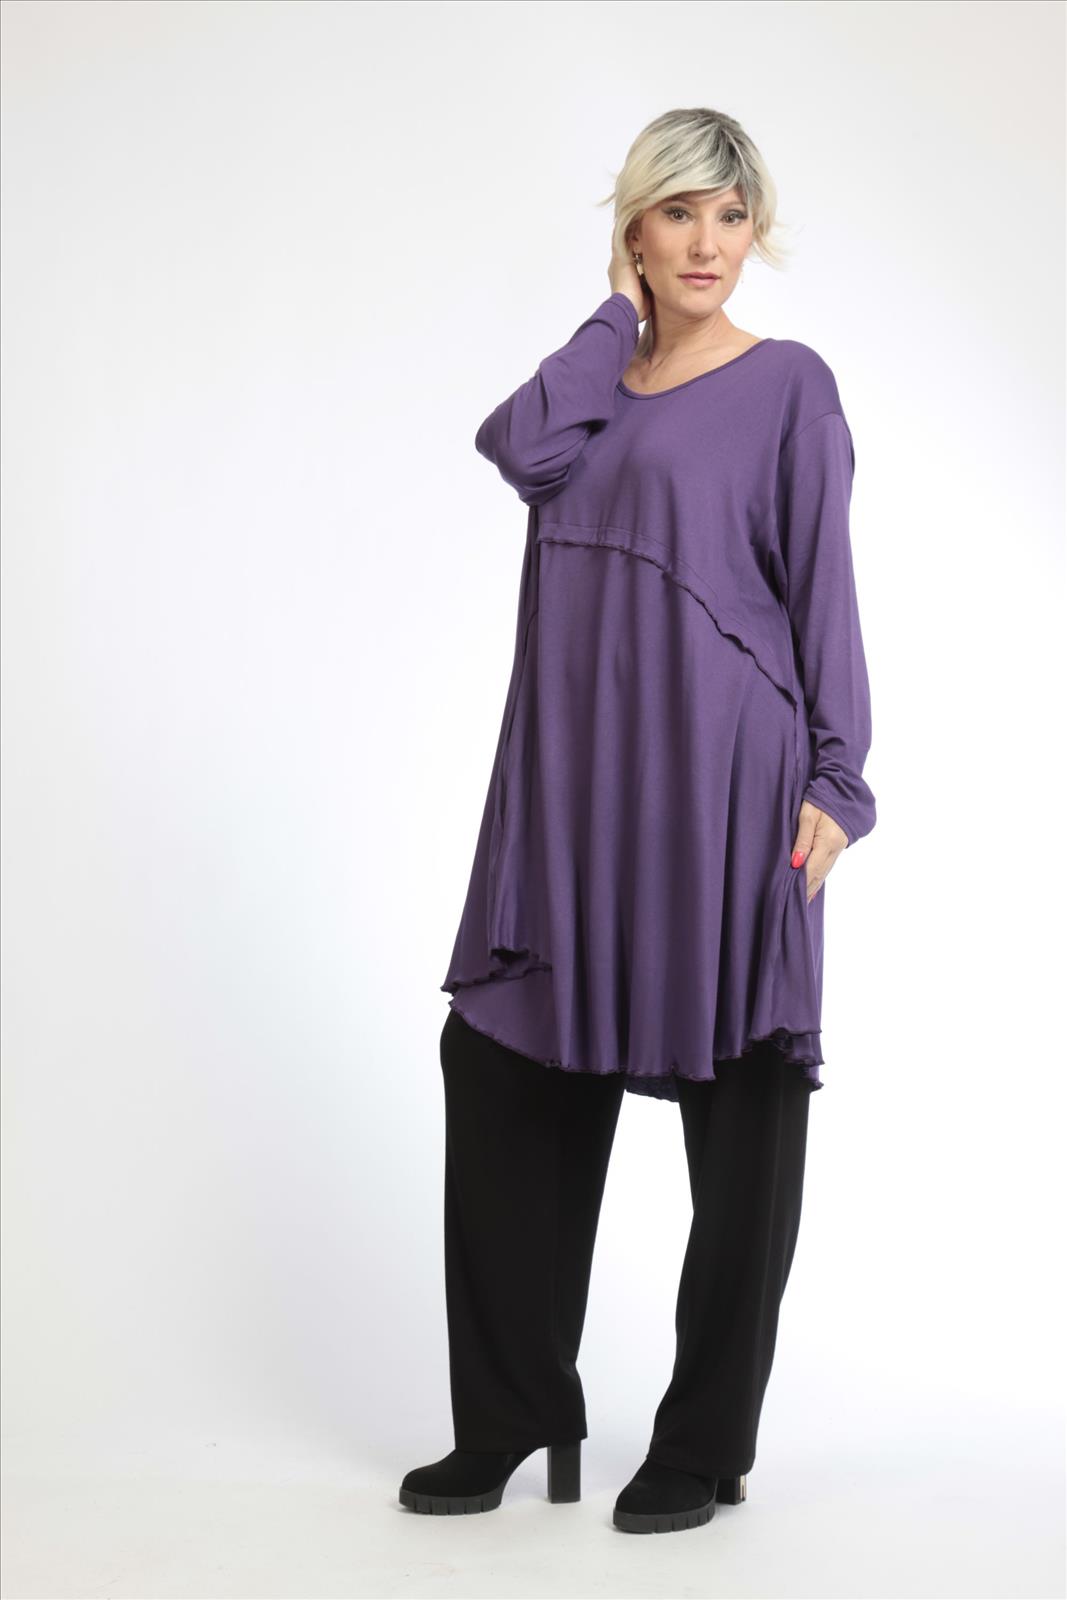 Alltags Big Shirt in A-Form aus feiner Jersey Qualität, Lila Lagenlook Oversize Mode B2B Großhandel